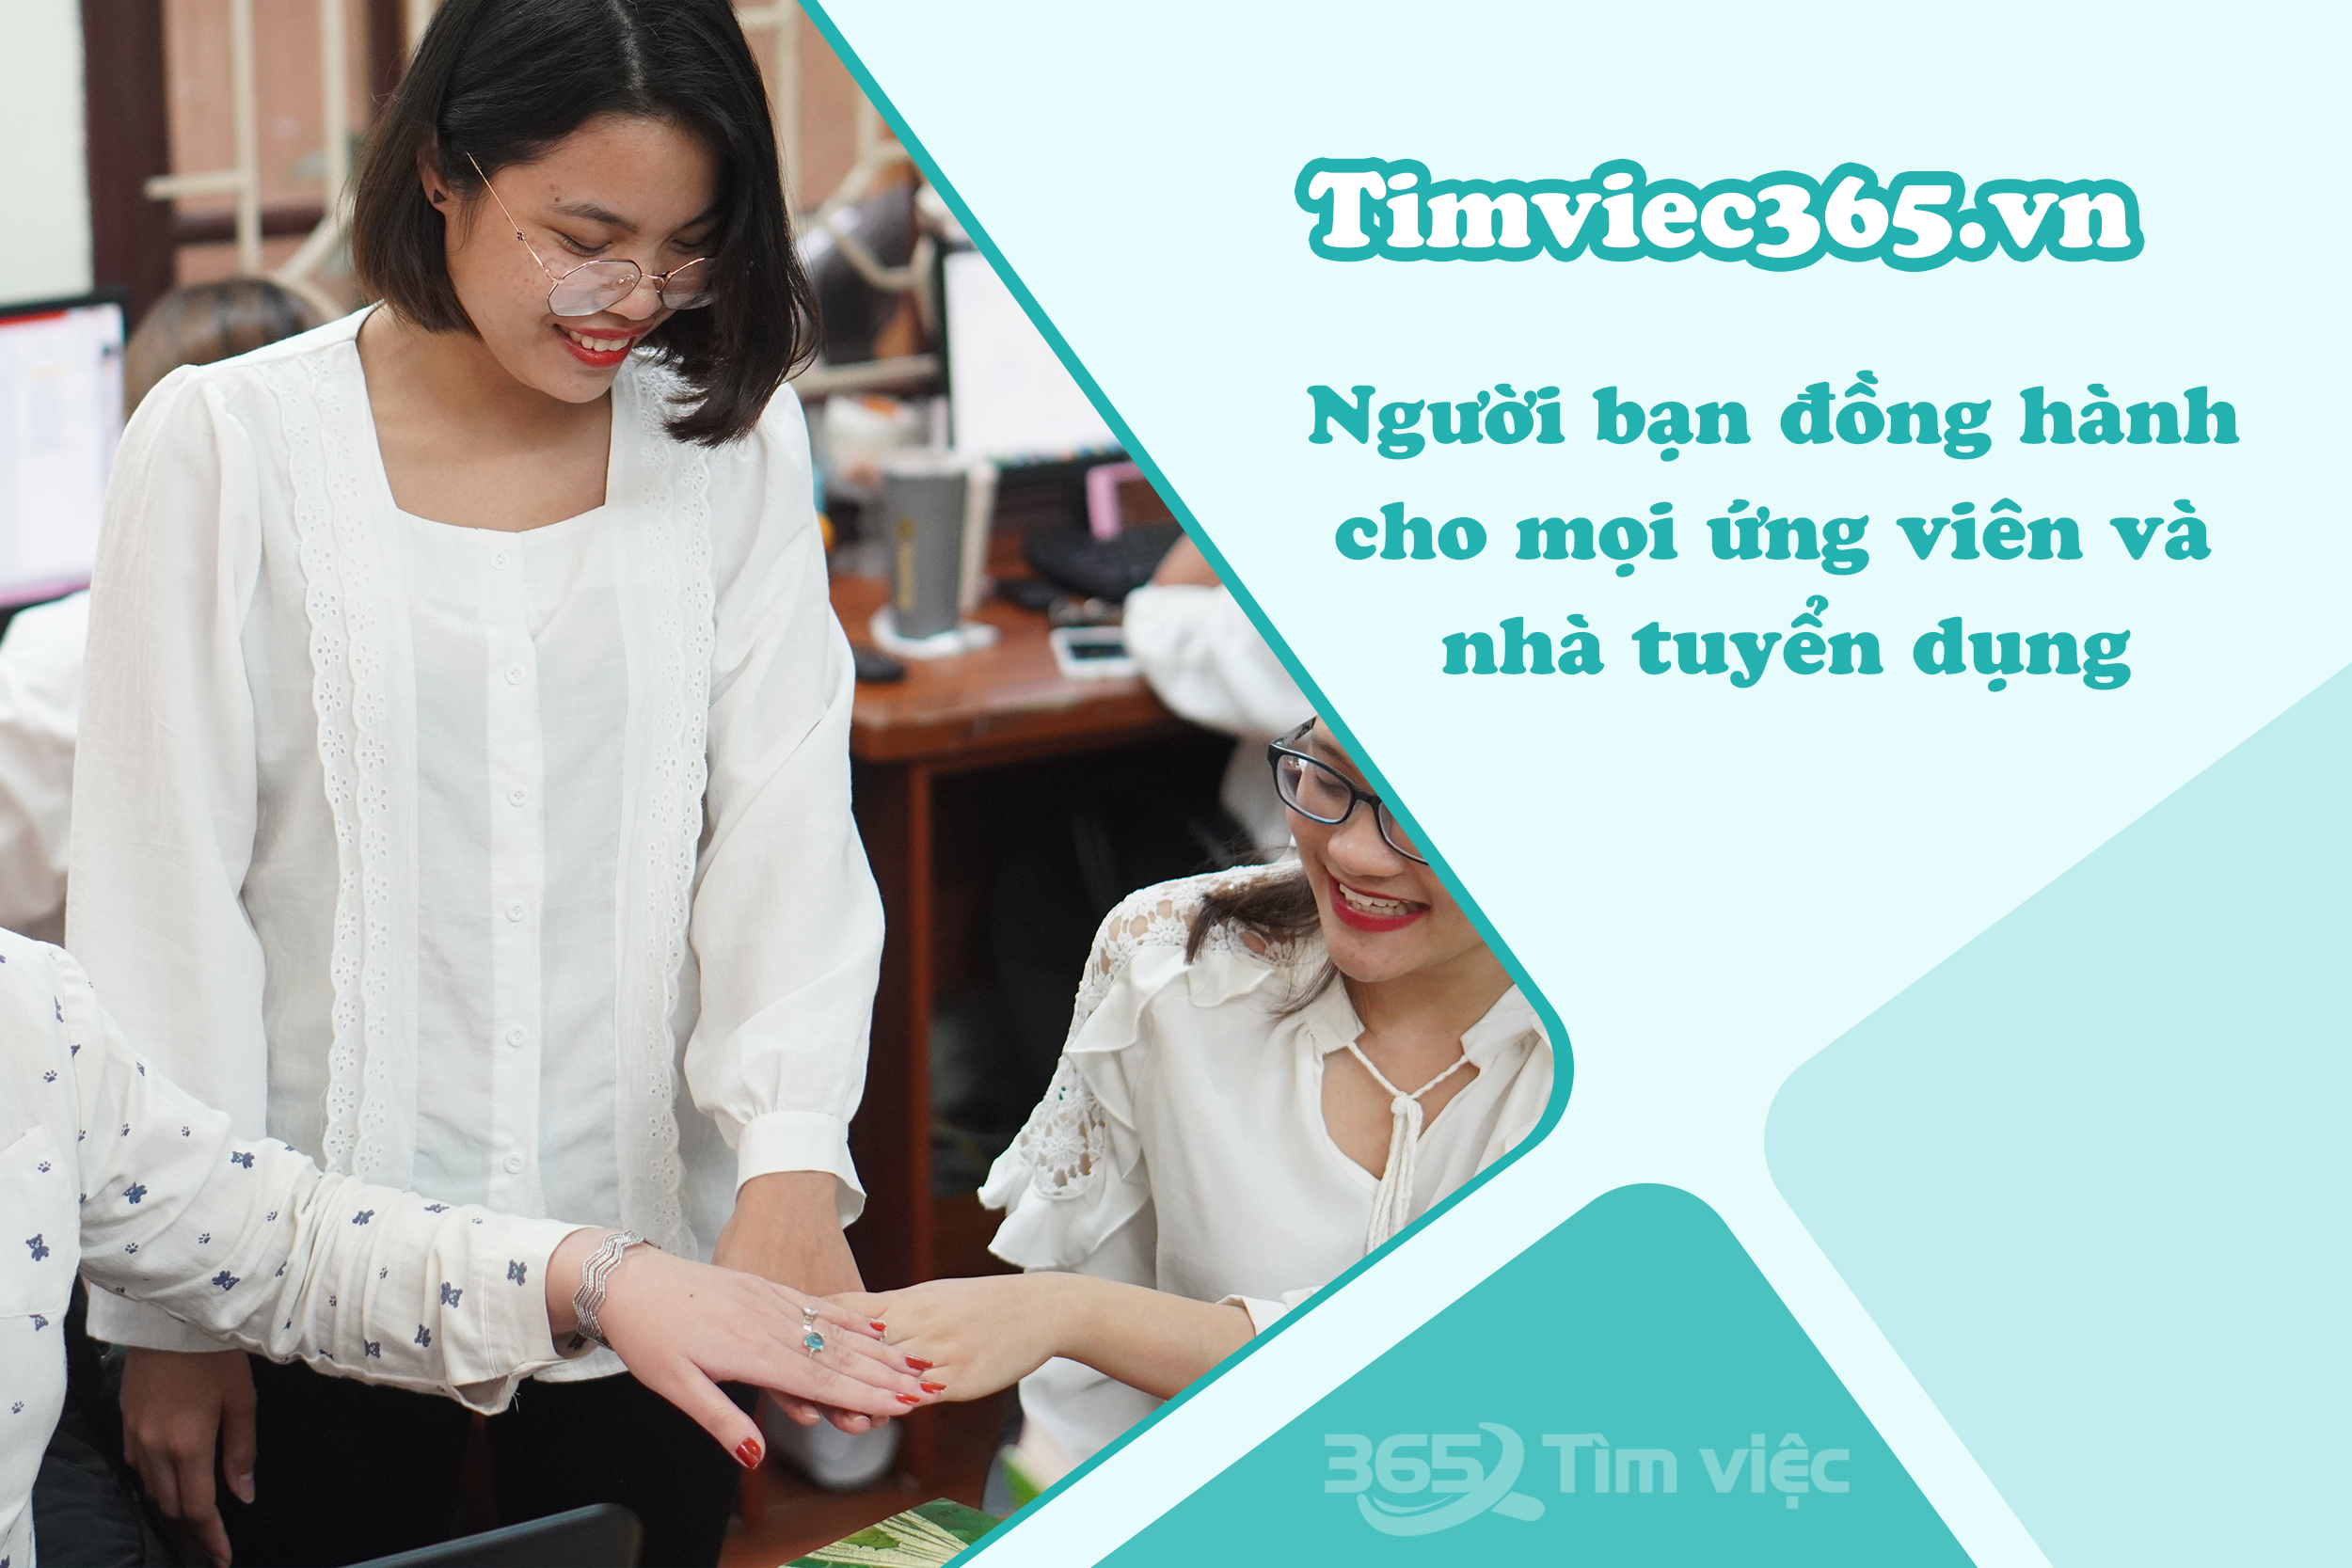 Timviec365.vn - cầu nối đưa bạn tiến xa hơn trong hành trình chinh phục ước mơ việc làm Điện - Điện tử tại Quảng Ngãi